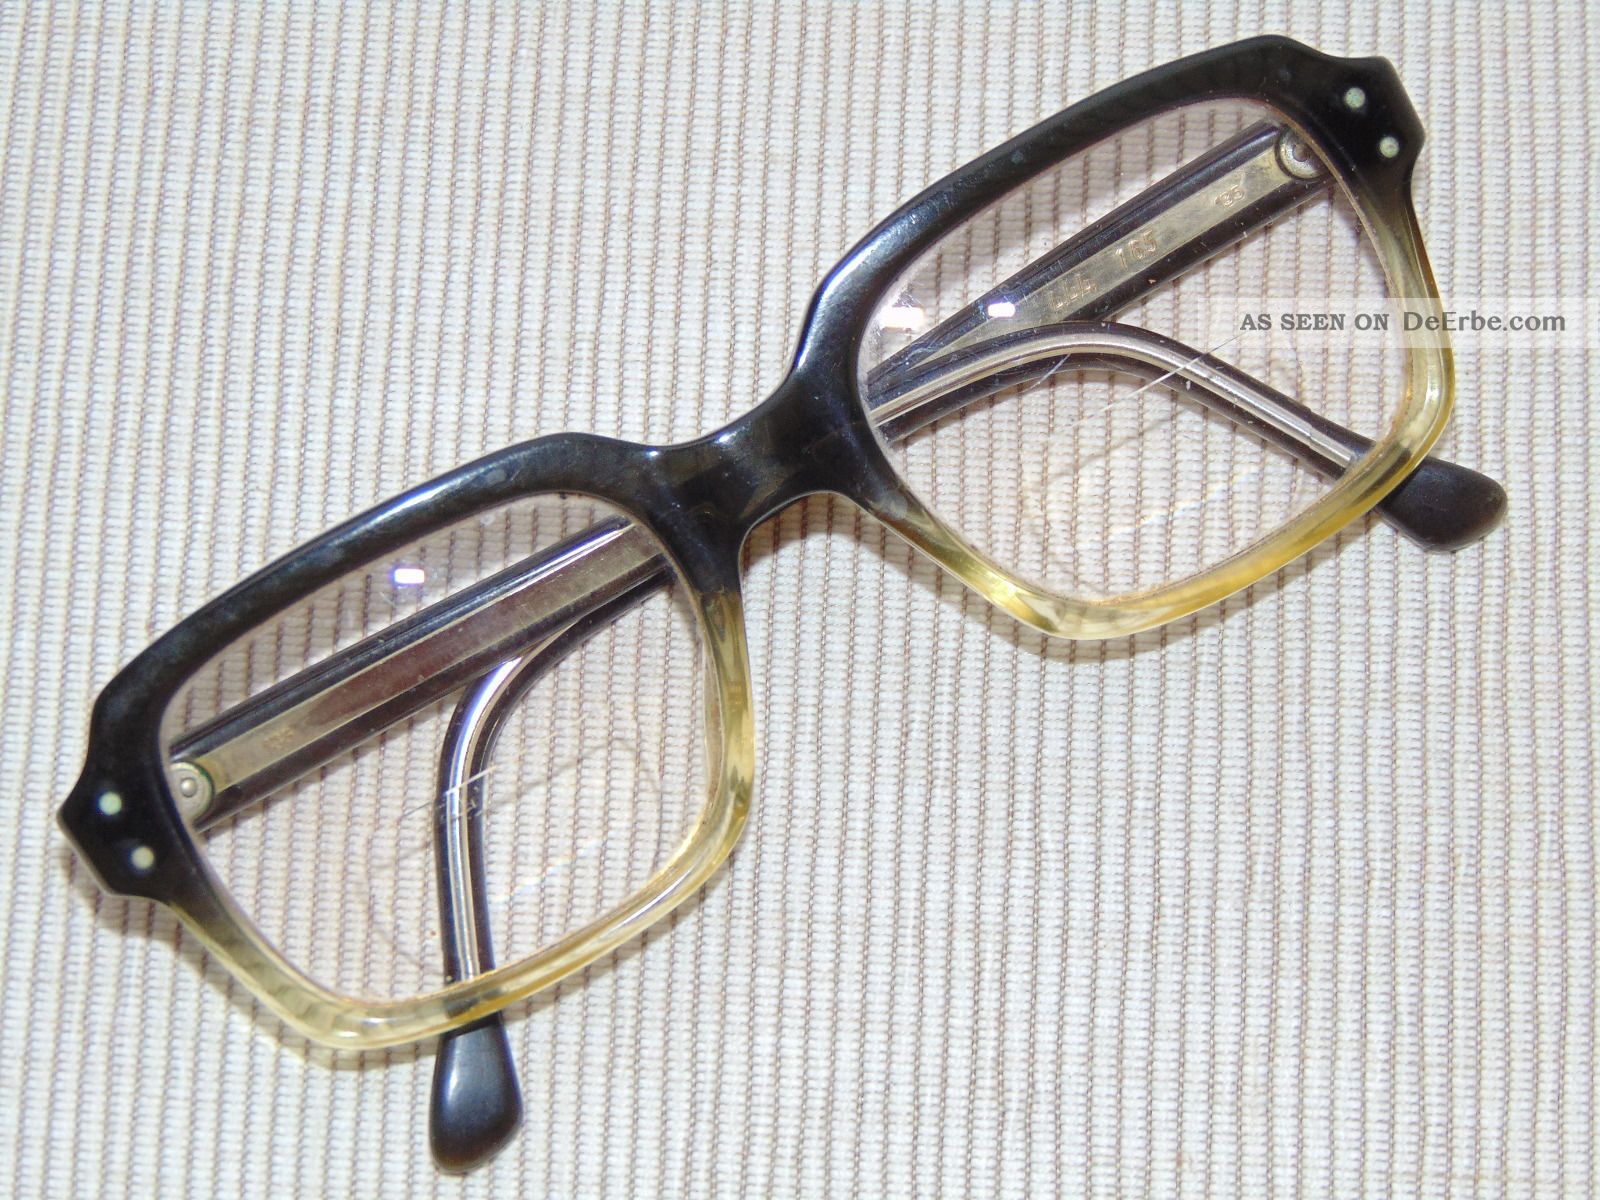 Alte Brille Hornbrille Metzler 50/60 Er Jahre Kult Vintage Schlagermove Csd 1/4 Accessoires Bild